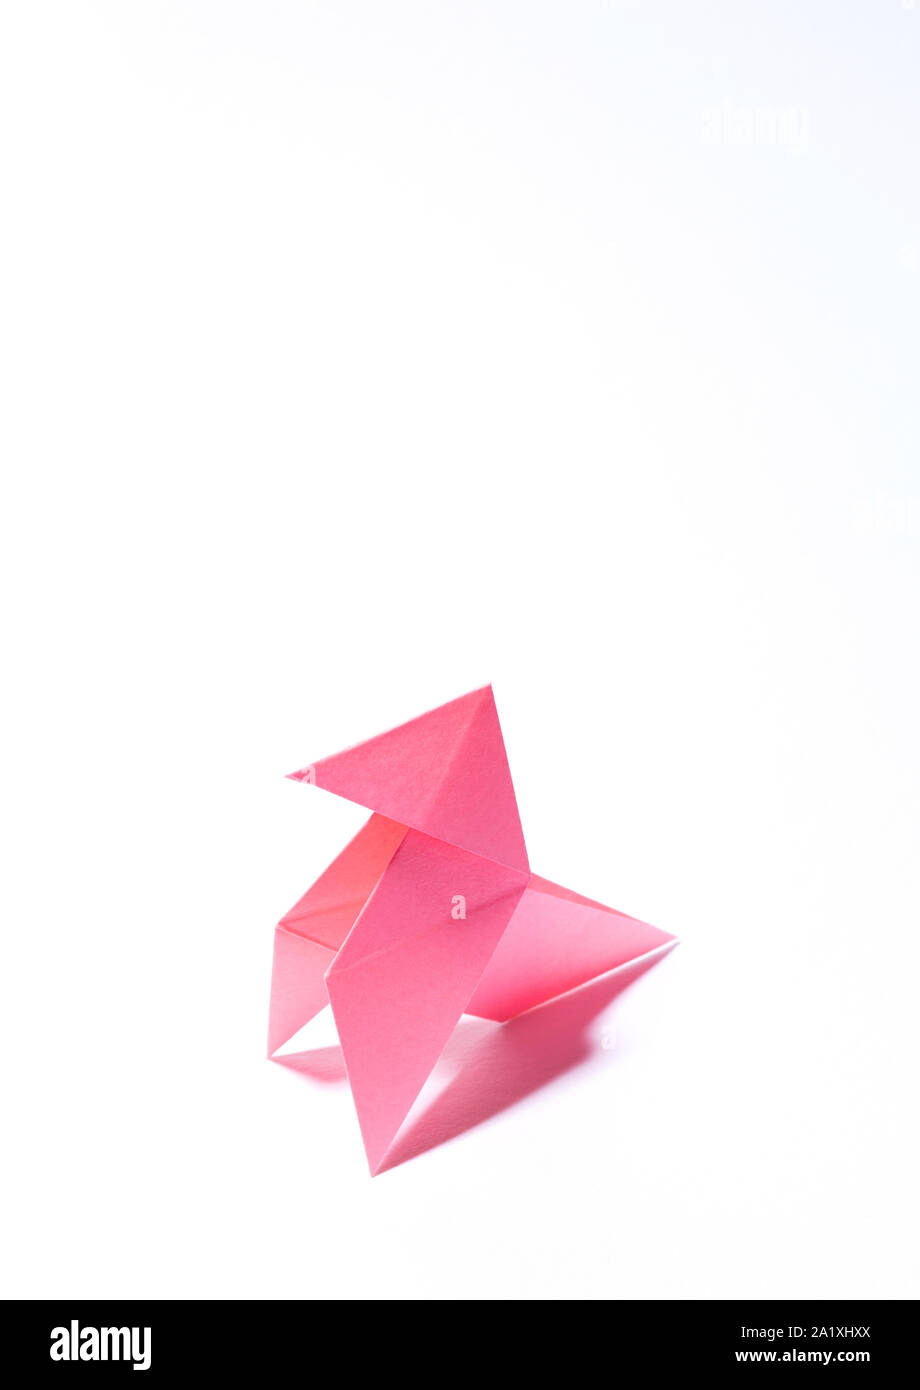 Papier origami oiseau rose classique avec de l'espace libre pour le texte  sur le côté supérieur, haut grande taille et texture cartoon Photo Stock -  Alamy